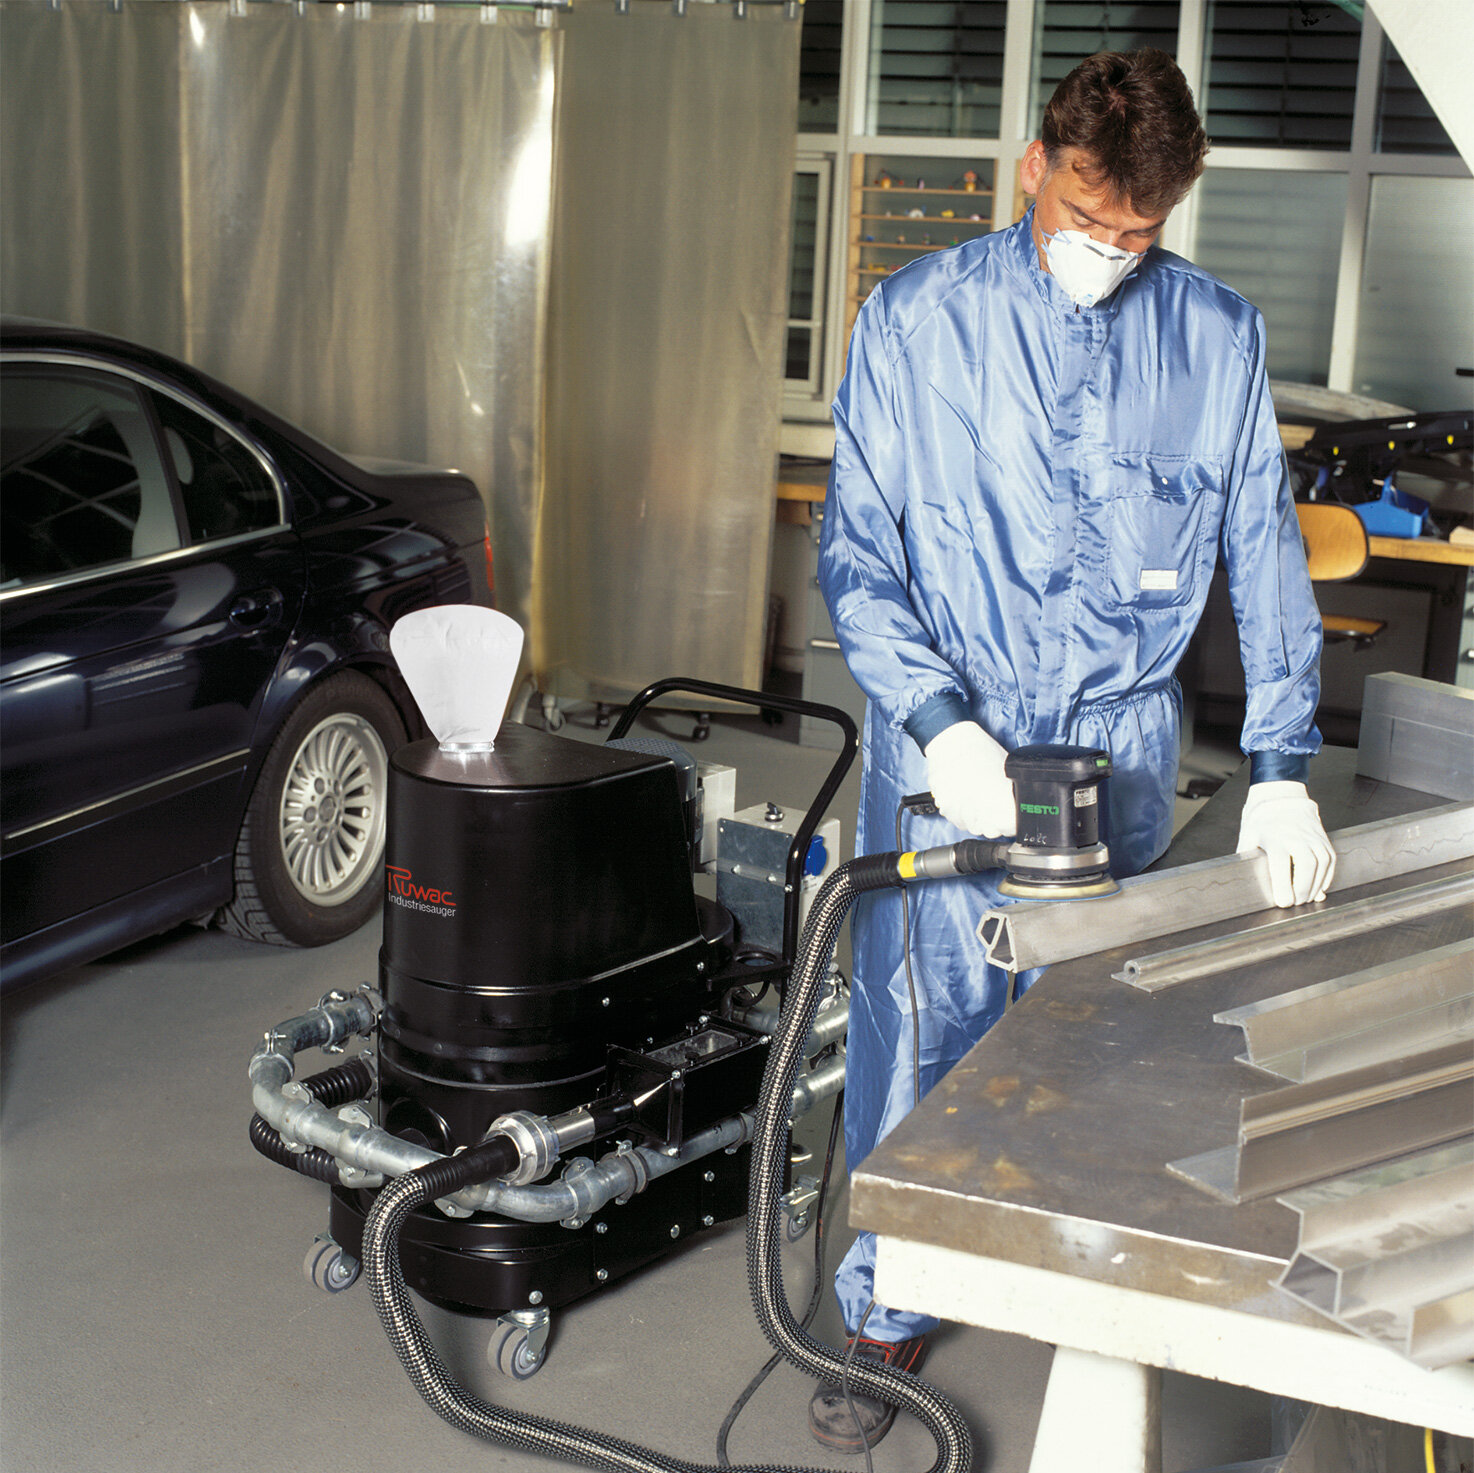 Ruwac industriezuiger R01 R022 met vonkenvanger in stofexplosieve atmosfeer zuigt ontvlambaar aluminiumstof bij BMW München.